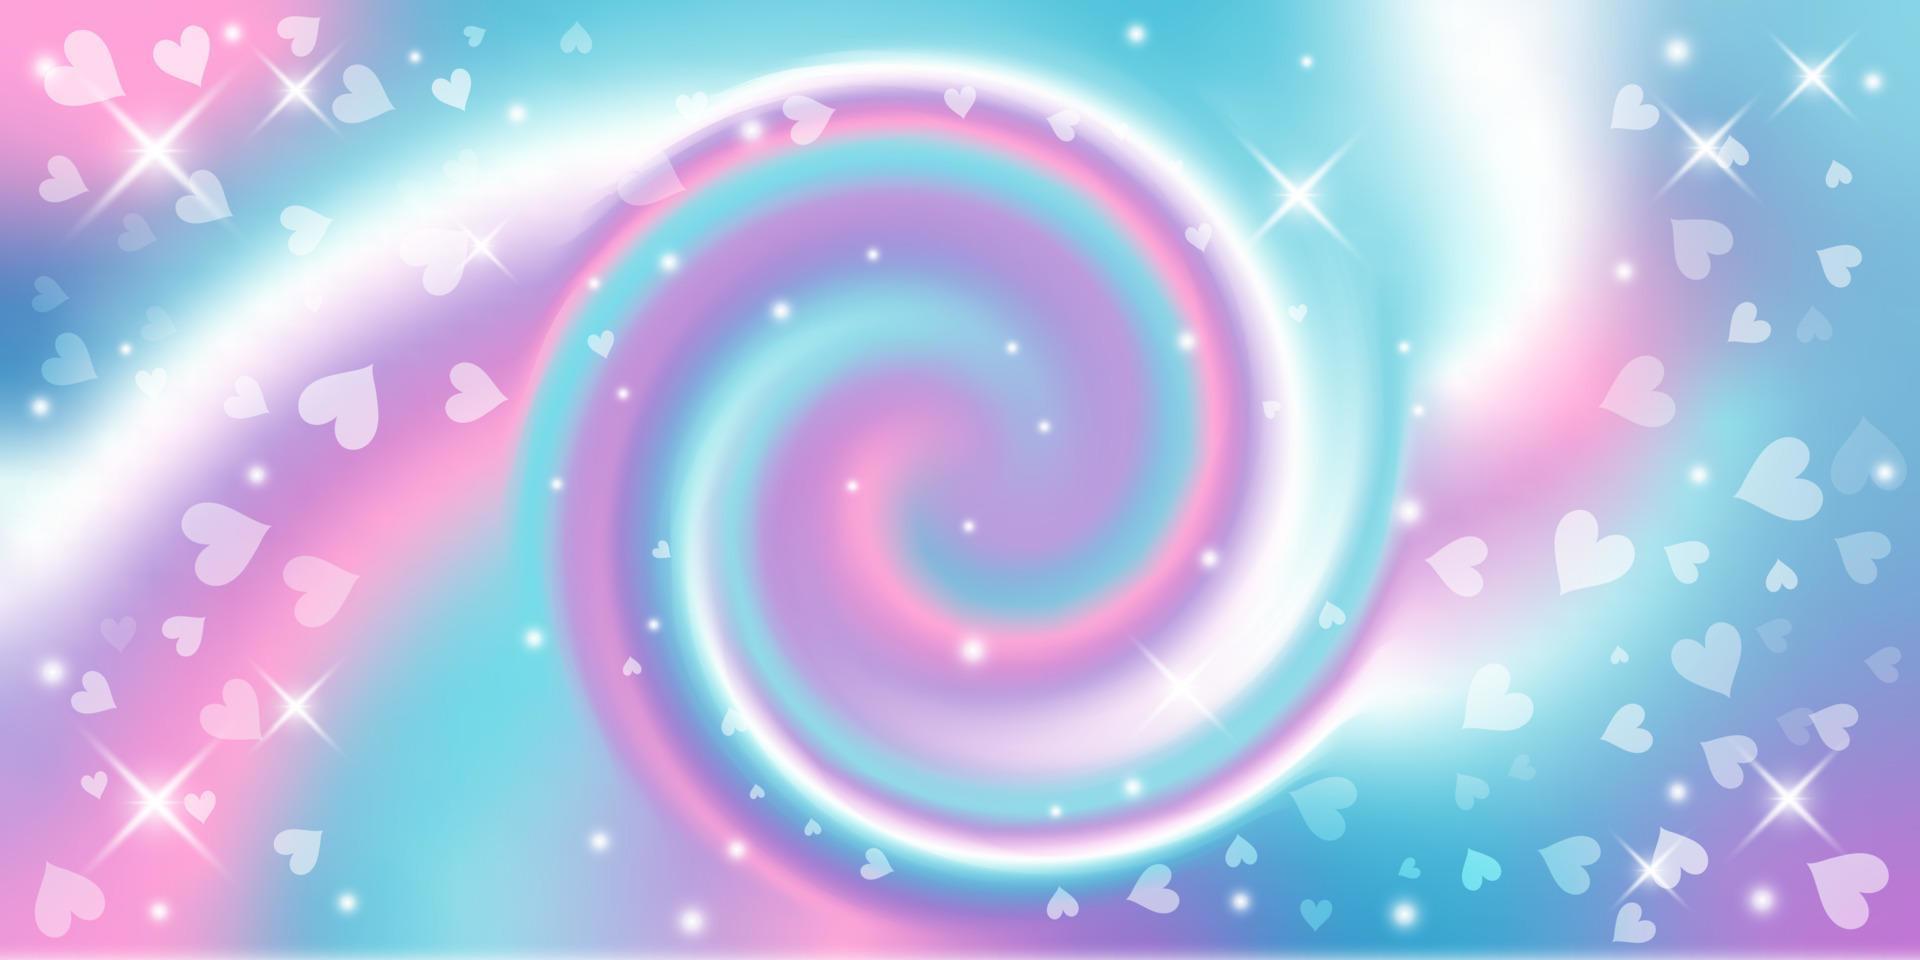 Nền cầu vồng xoáy vòng: Cảm giác của bạn sẽ tràn đầy năng lượng khi xem những gam màu xoắn ốc tuyệt đẹp của nền cầu vồng xoáy vòng này, đừng ngần ngại mà hãy xem ngay!